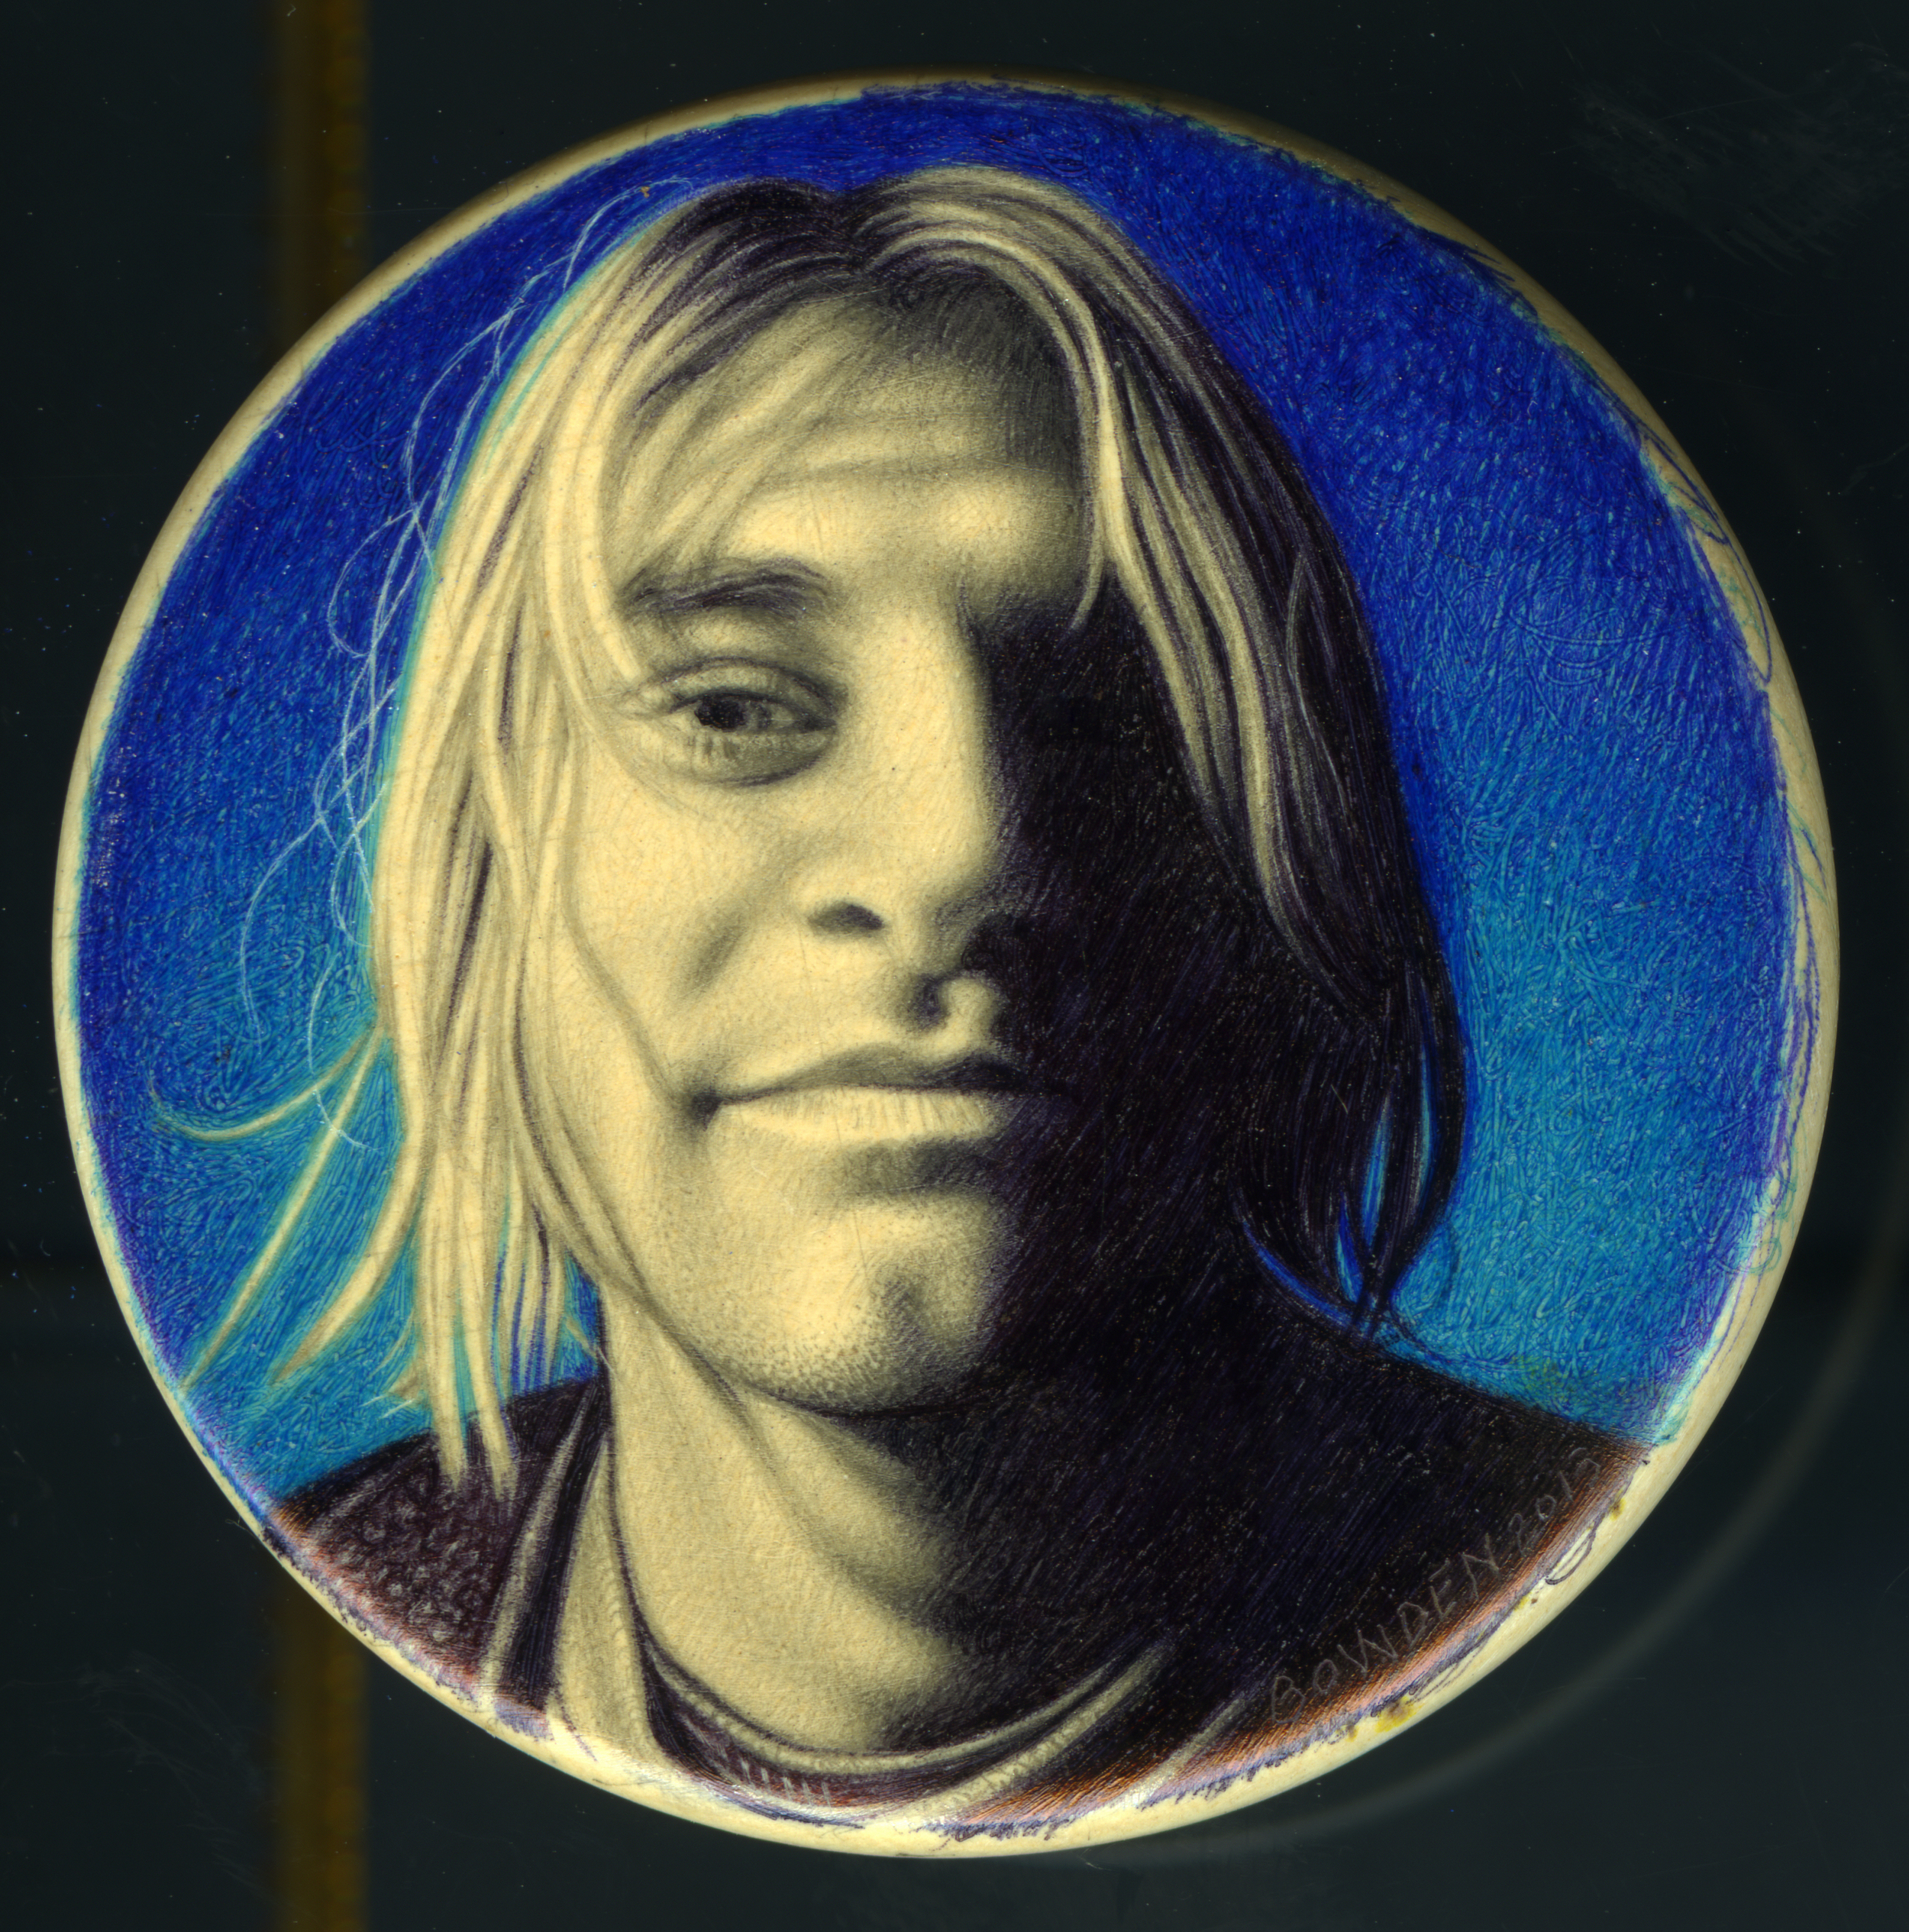 Kurdt Cobain {Nirvana}